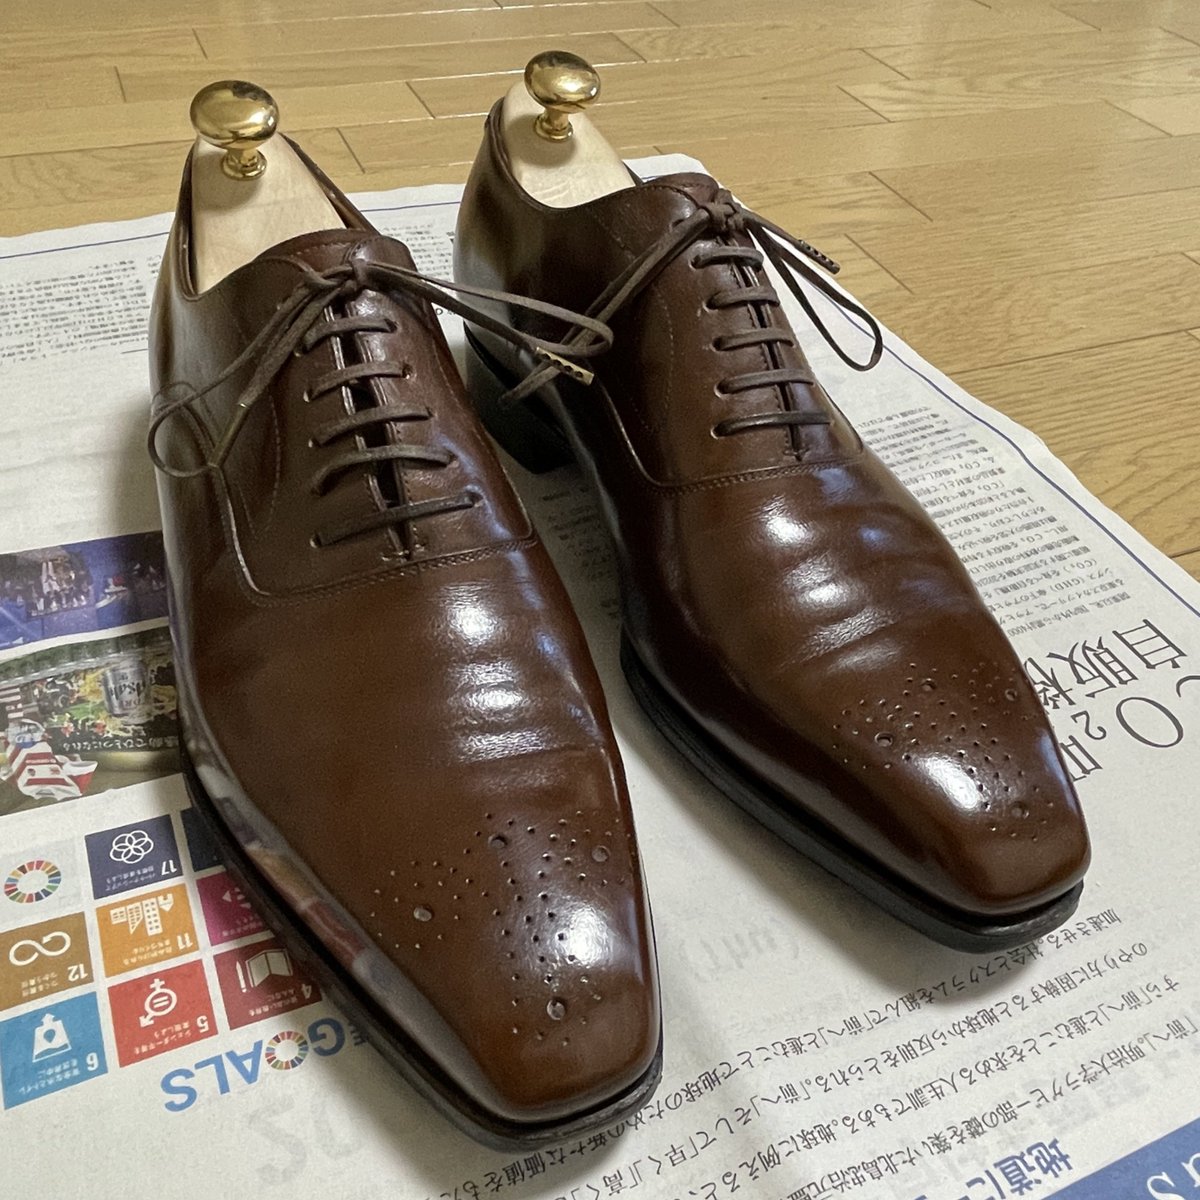 REGAL TOKYOの九分仕立てをメンテナンス。御手洗メソッドの半年間の週1メンテ（途中何度かさぼって半年以上かかってるけど）もこれにて完了。

いい具合に育ってきました。

#靴磨き #shoecare #御手洗メソッド #regaltokyo